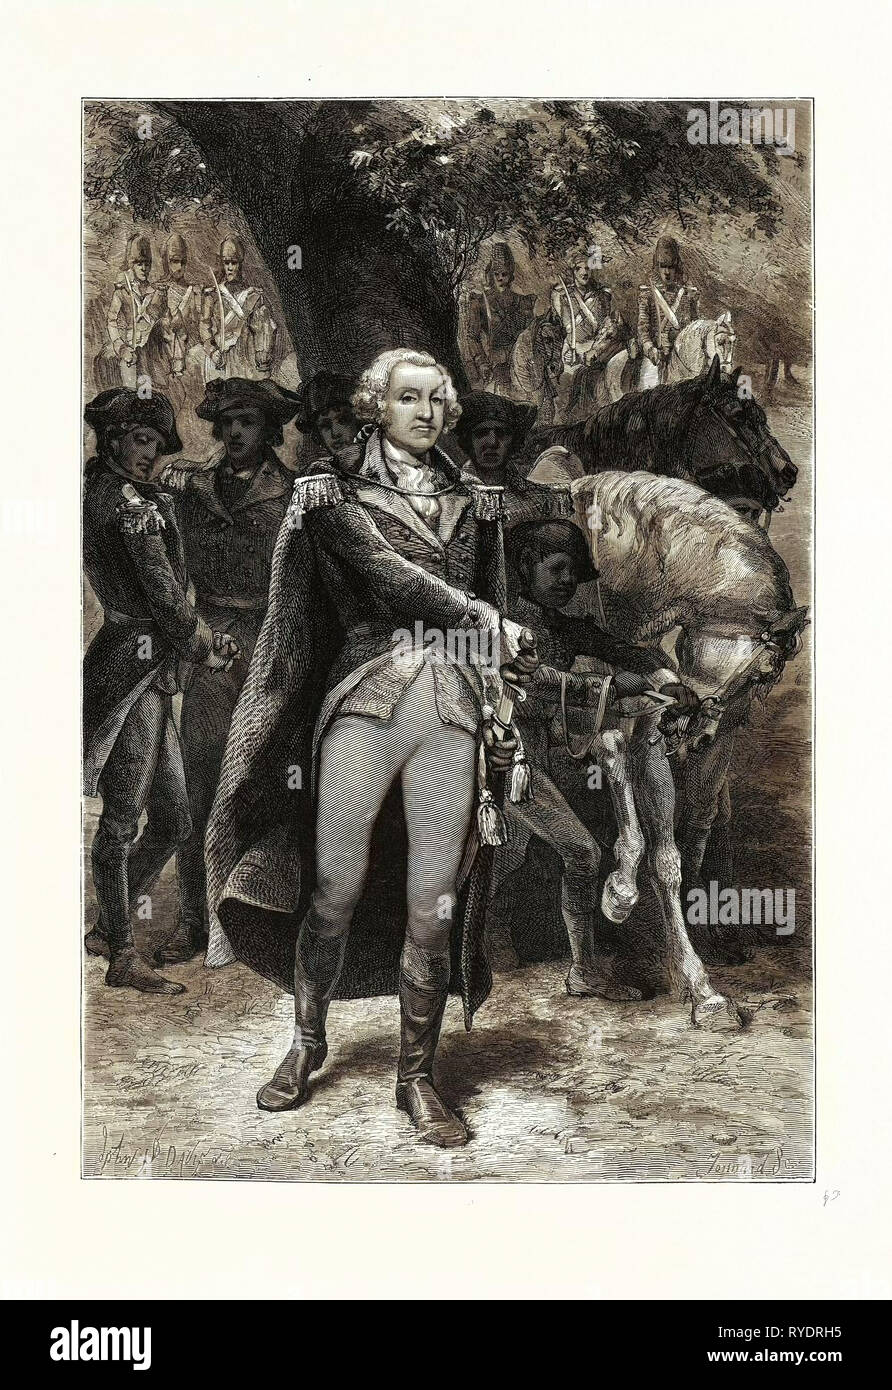 Washington unter Befehl. George Washington (1732-1799), Militär Allgemein und erster Präsident der Vereinigten Staaten von Amerika, USA Stockfoto